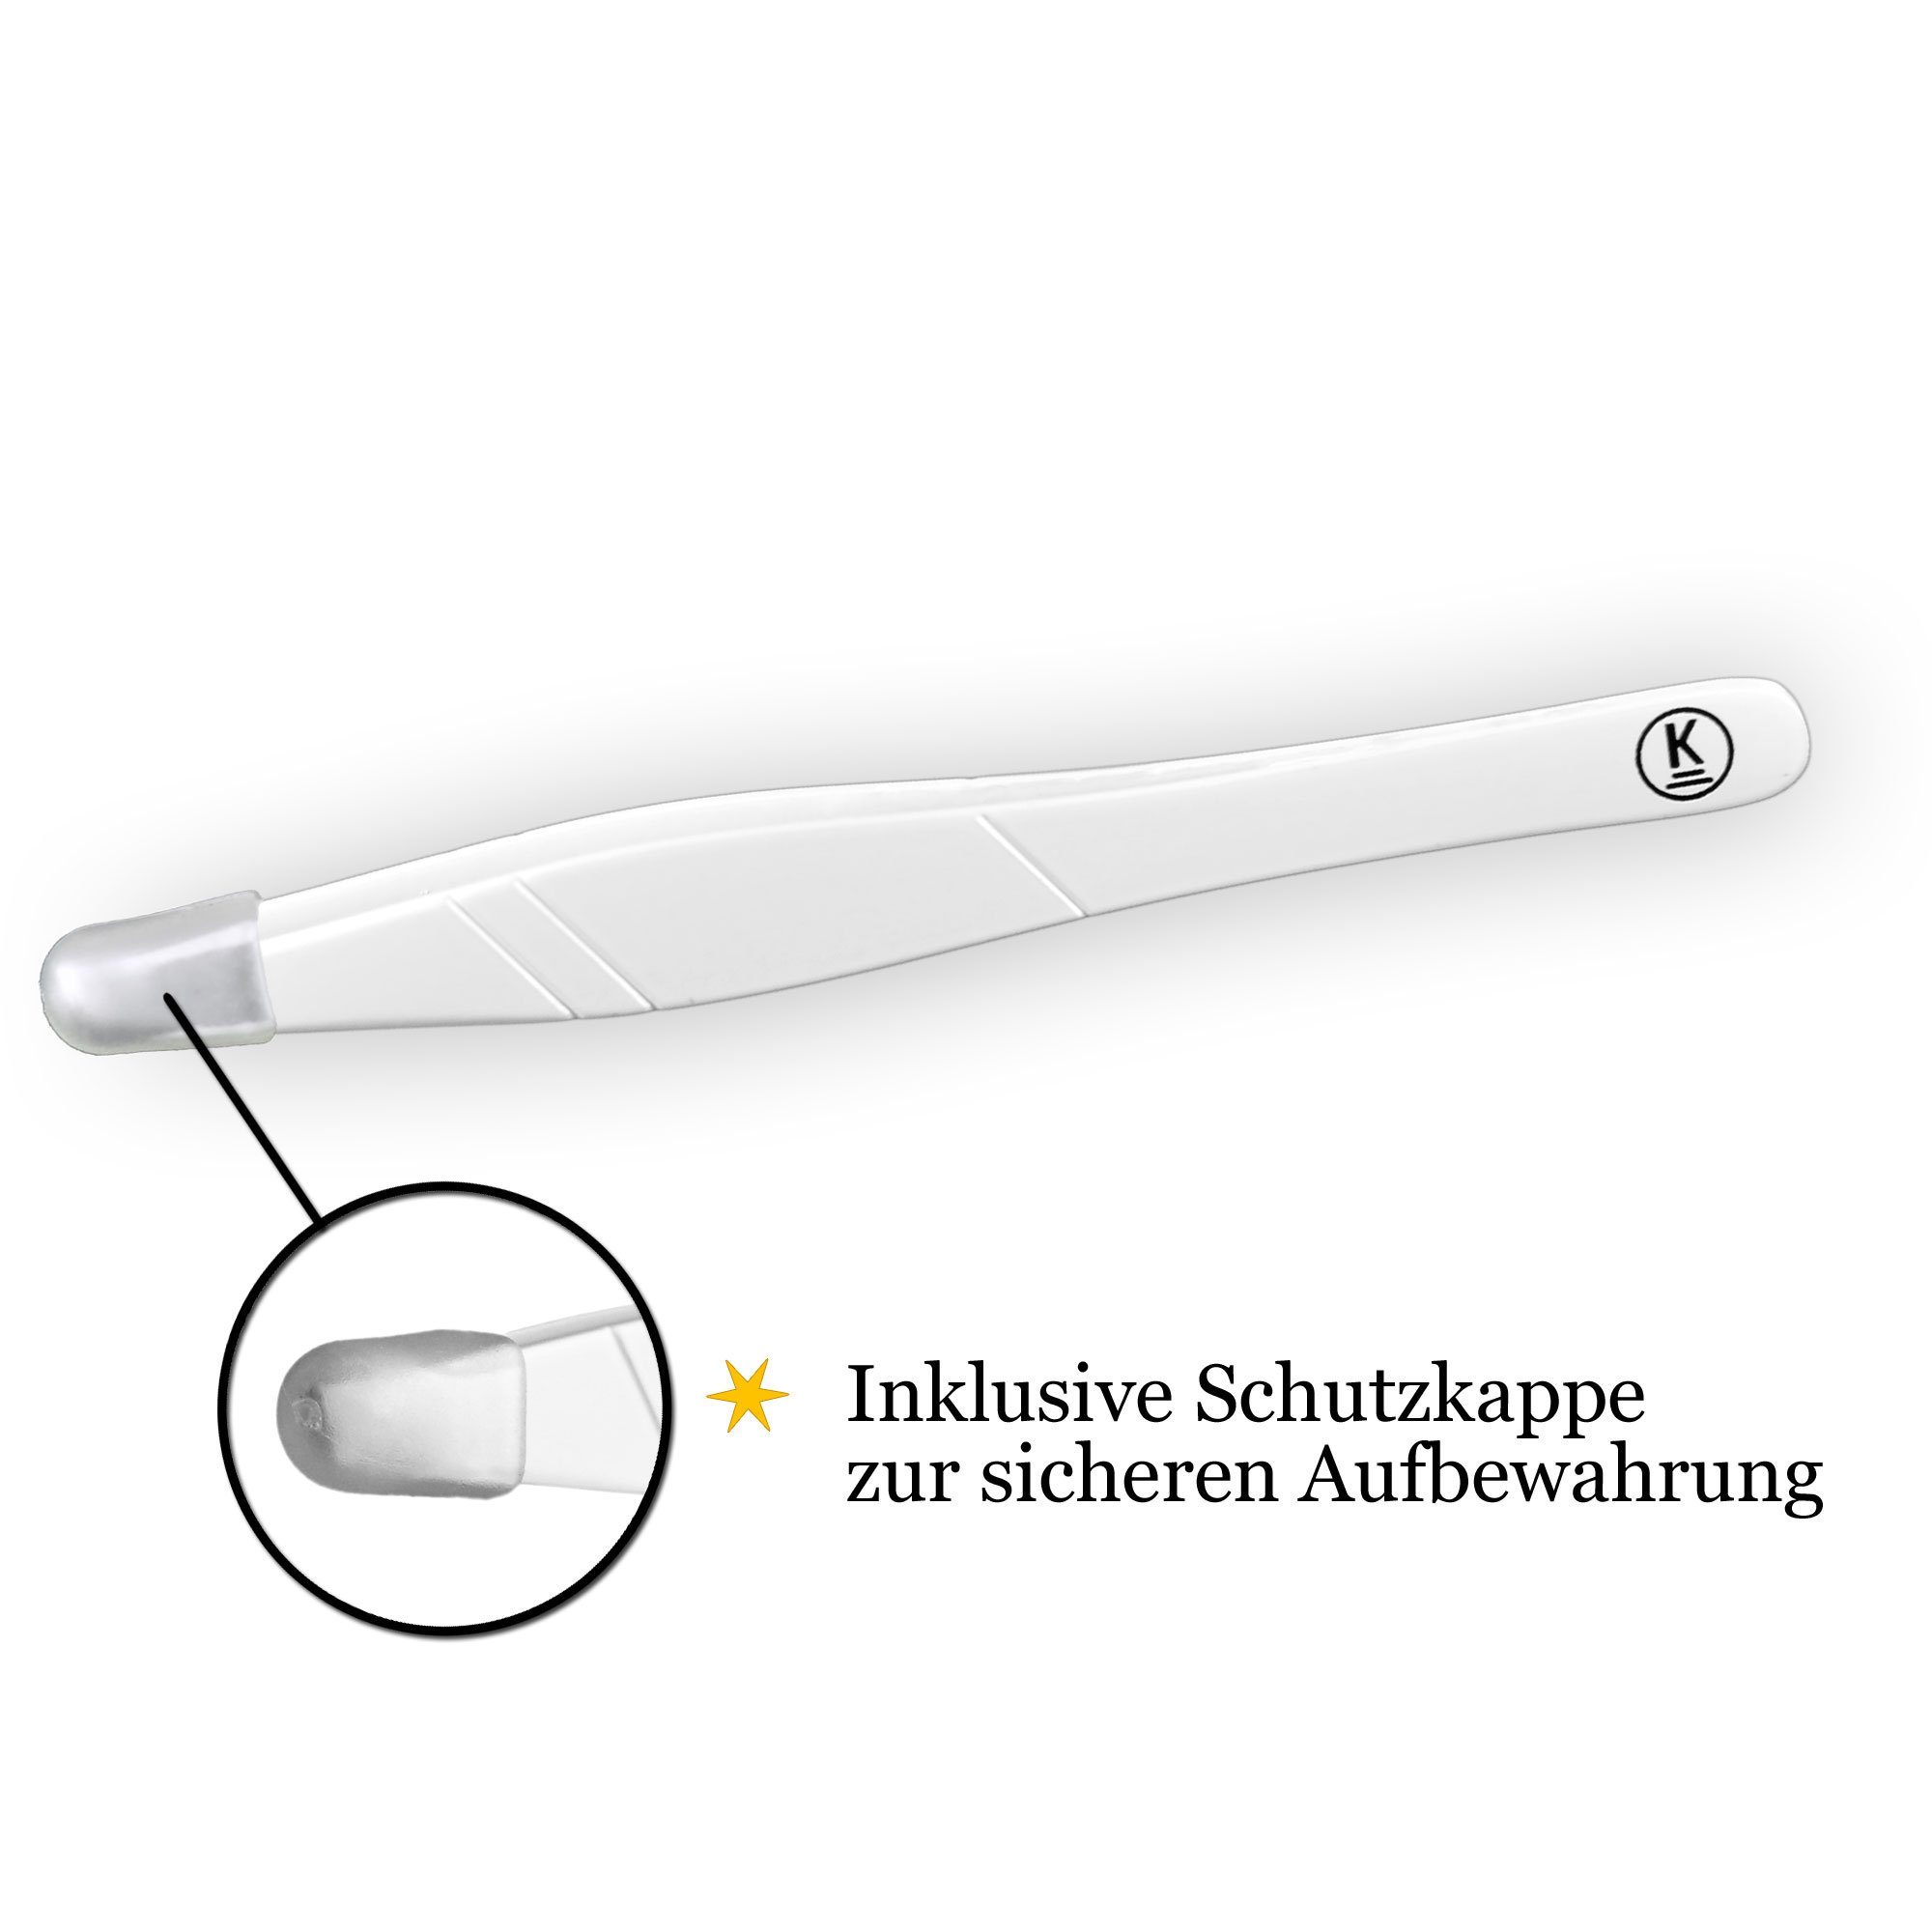 K-Pro Augenbrauenpinzette Pinzette zur Haarentfernung Edelstahl (Weiß) Schräg 1 Stück Profi